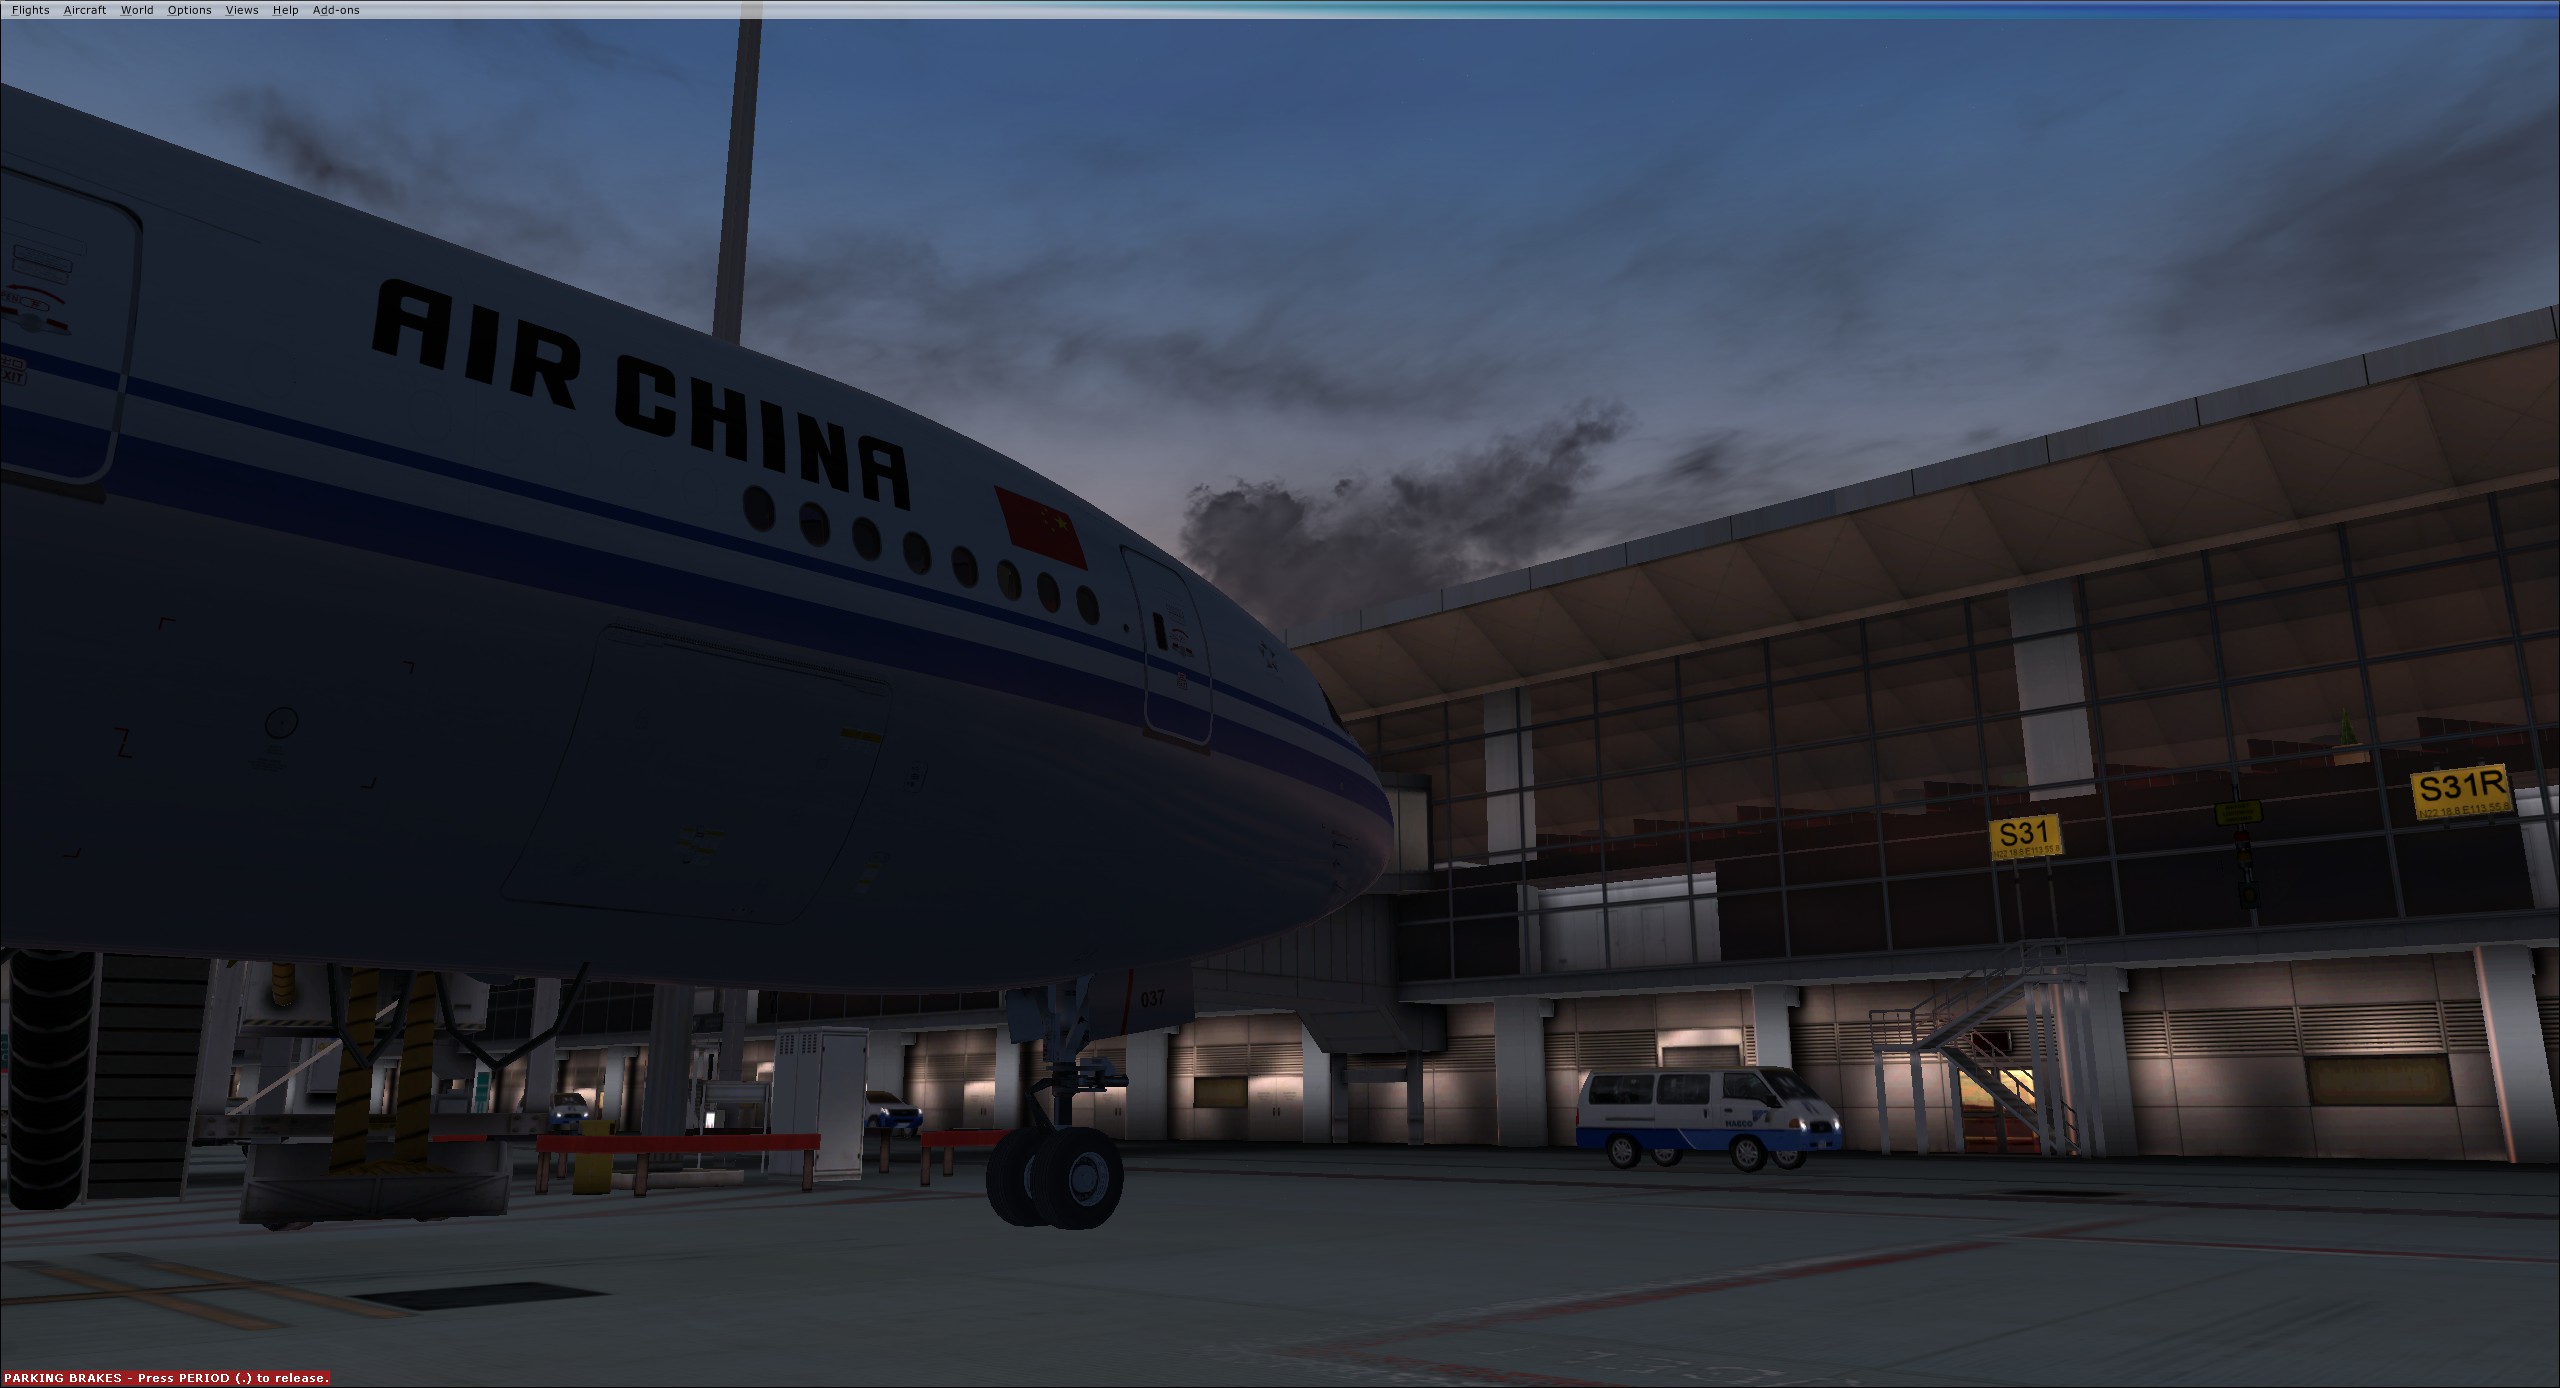 AirChina B77W VHHH-2907 